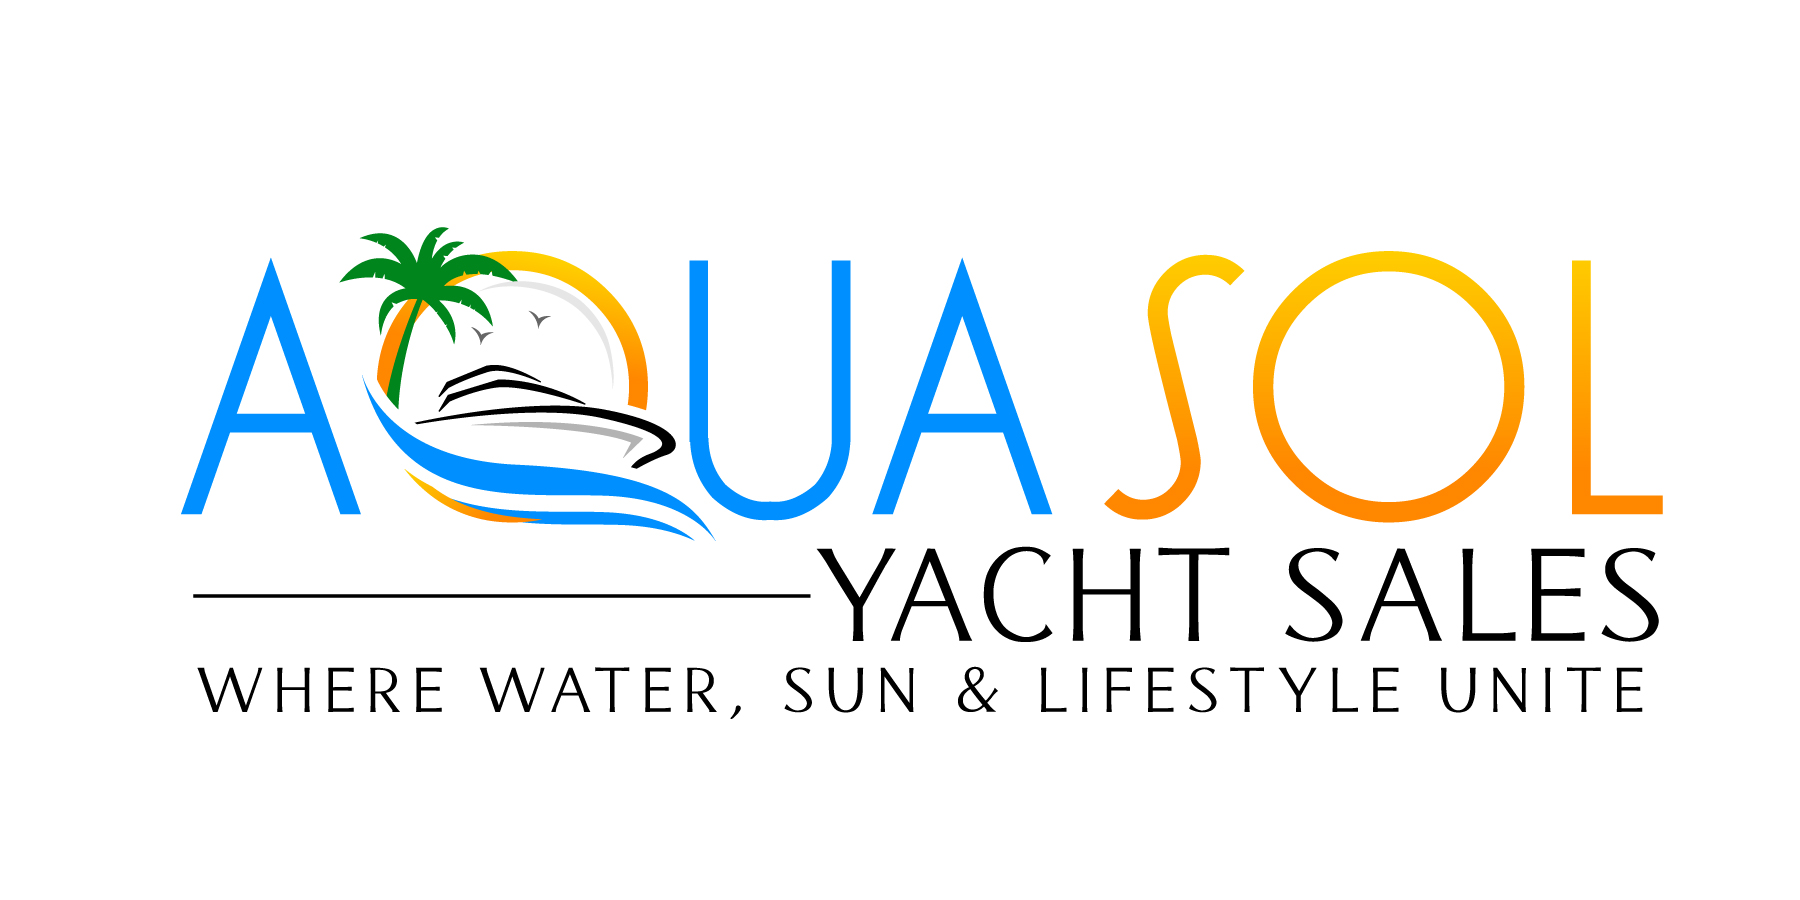 Aqua Sol Yacht Sales - Aqua Sol Yacht Sales logo